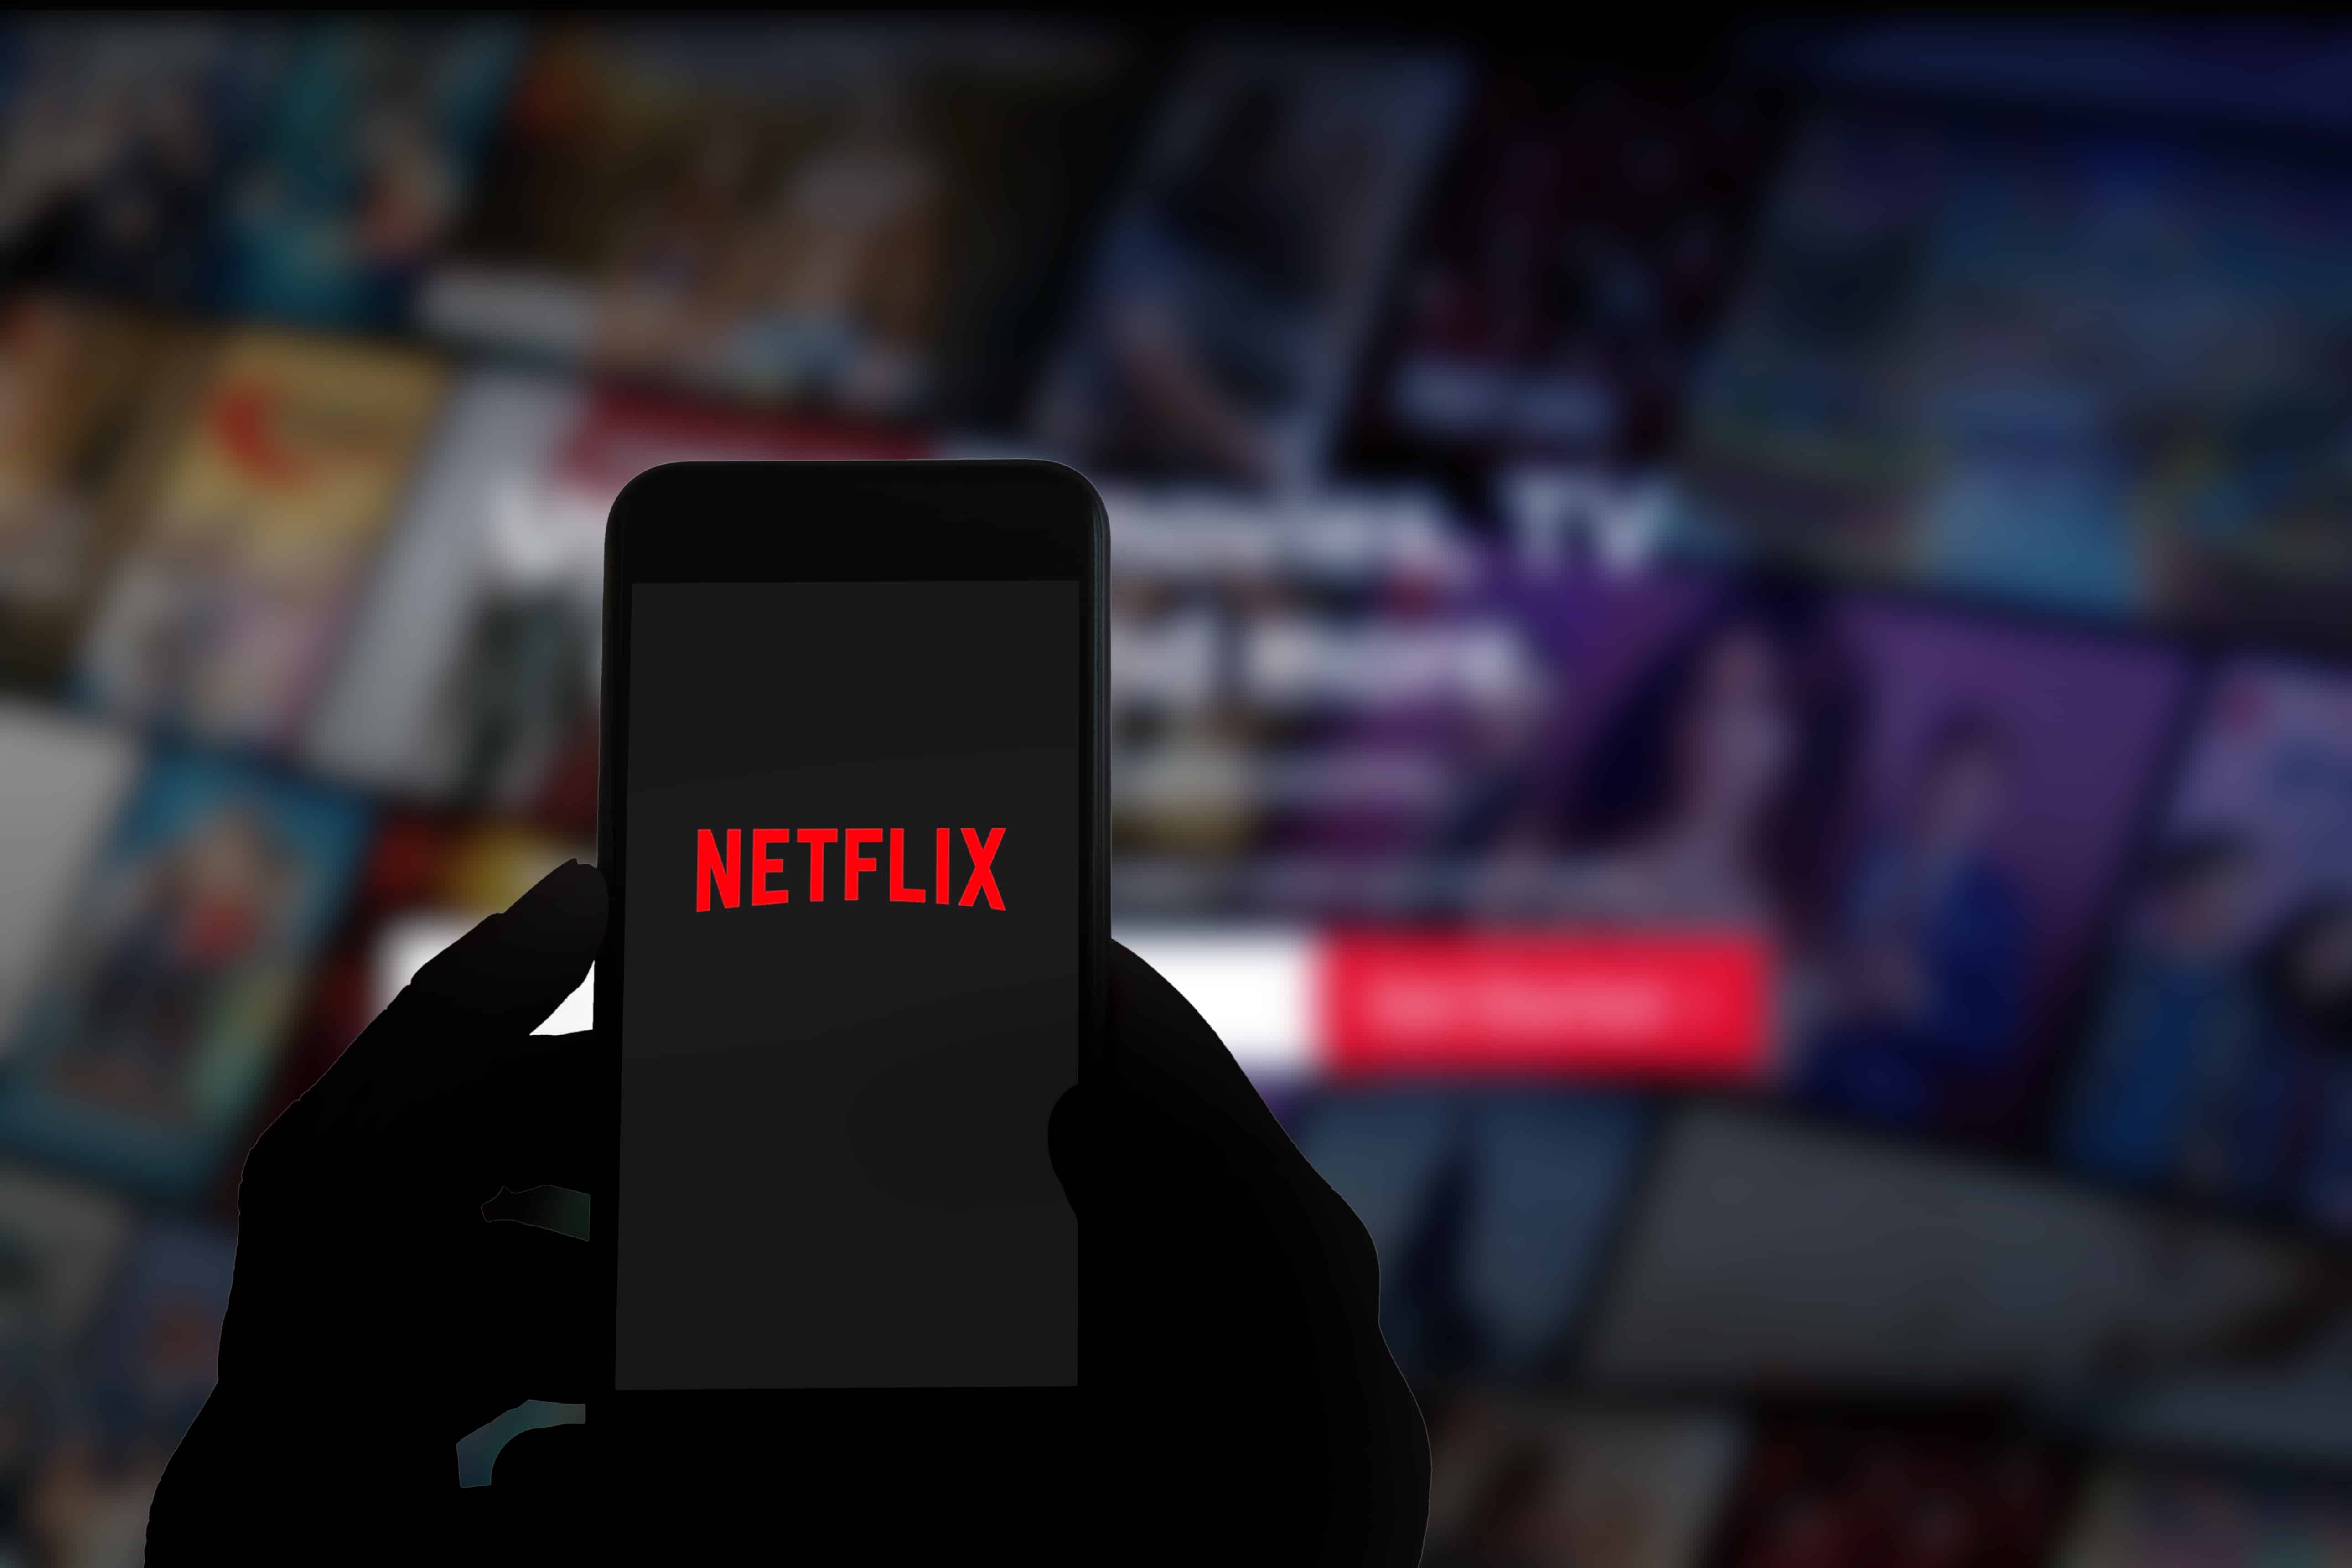 Firestick ရှိ Netflix Error Code NW-4-7 ကိုဖြေရှင်းရန် နည်းလမ်း 5 ခု